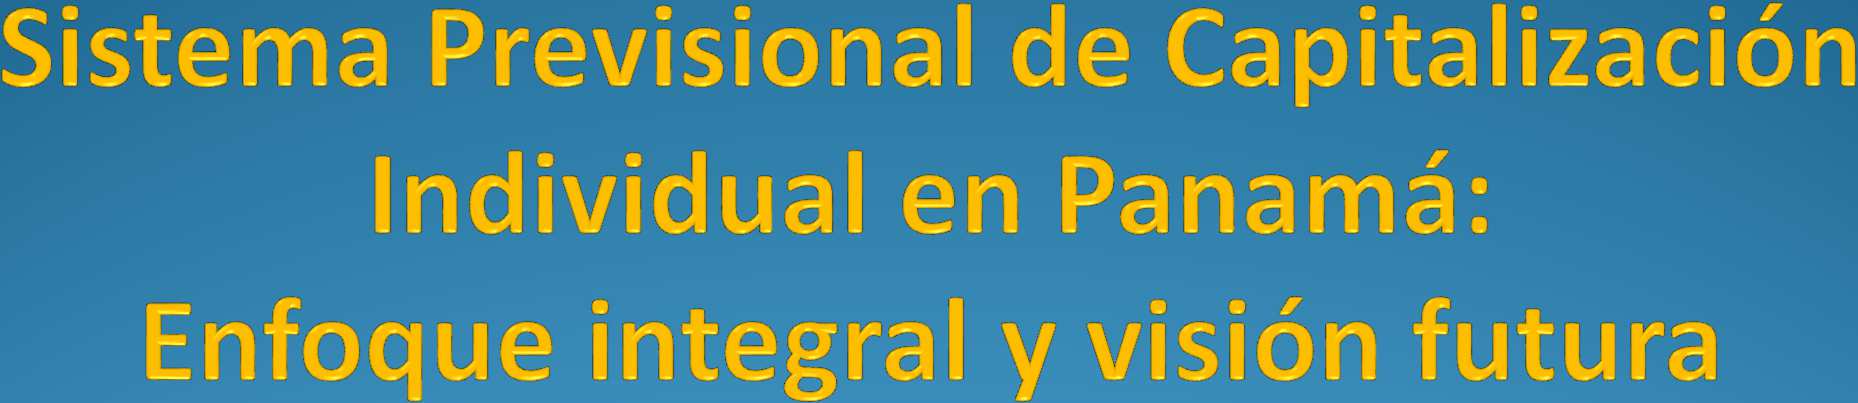 1 Seminario Sistemas de Pensiones Multipilar y Desarrollo en América Latina República